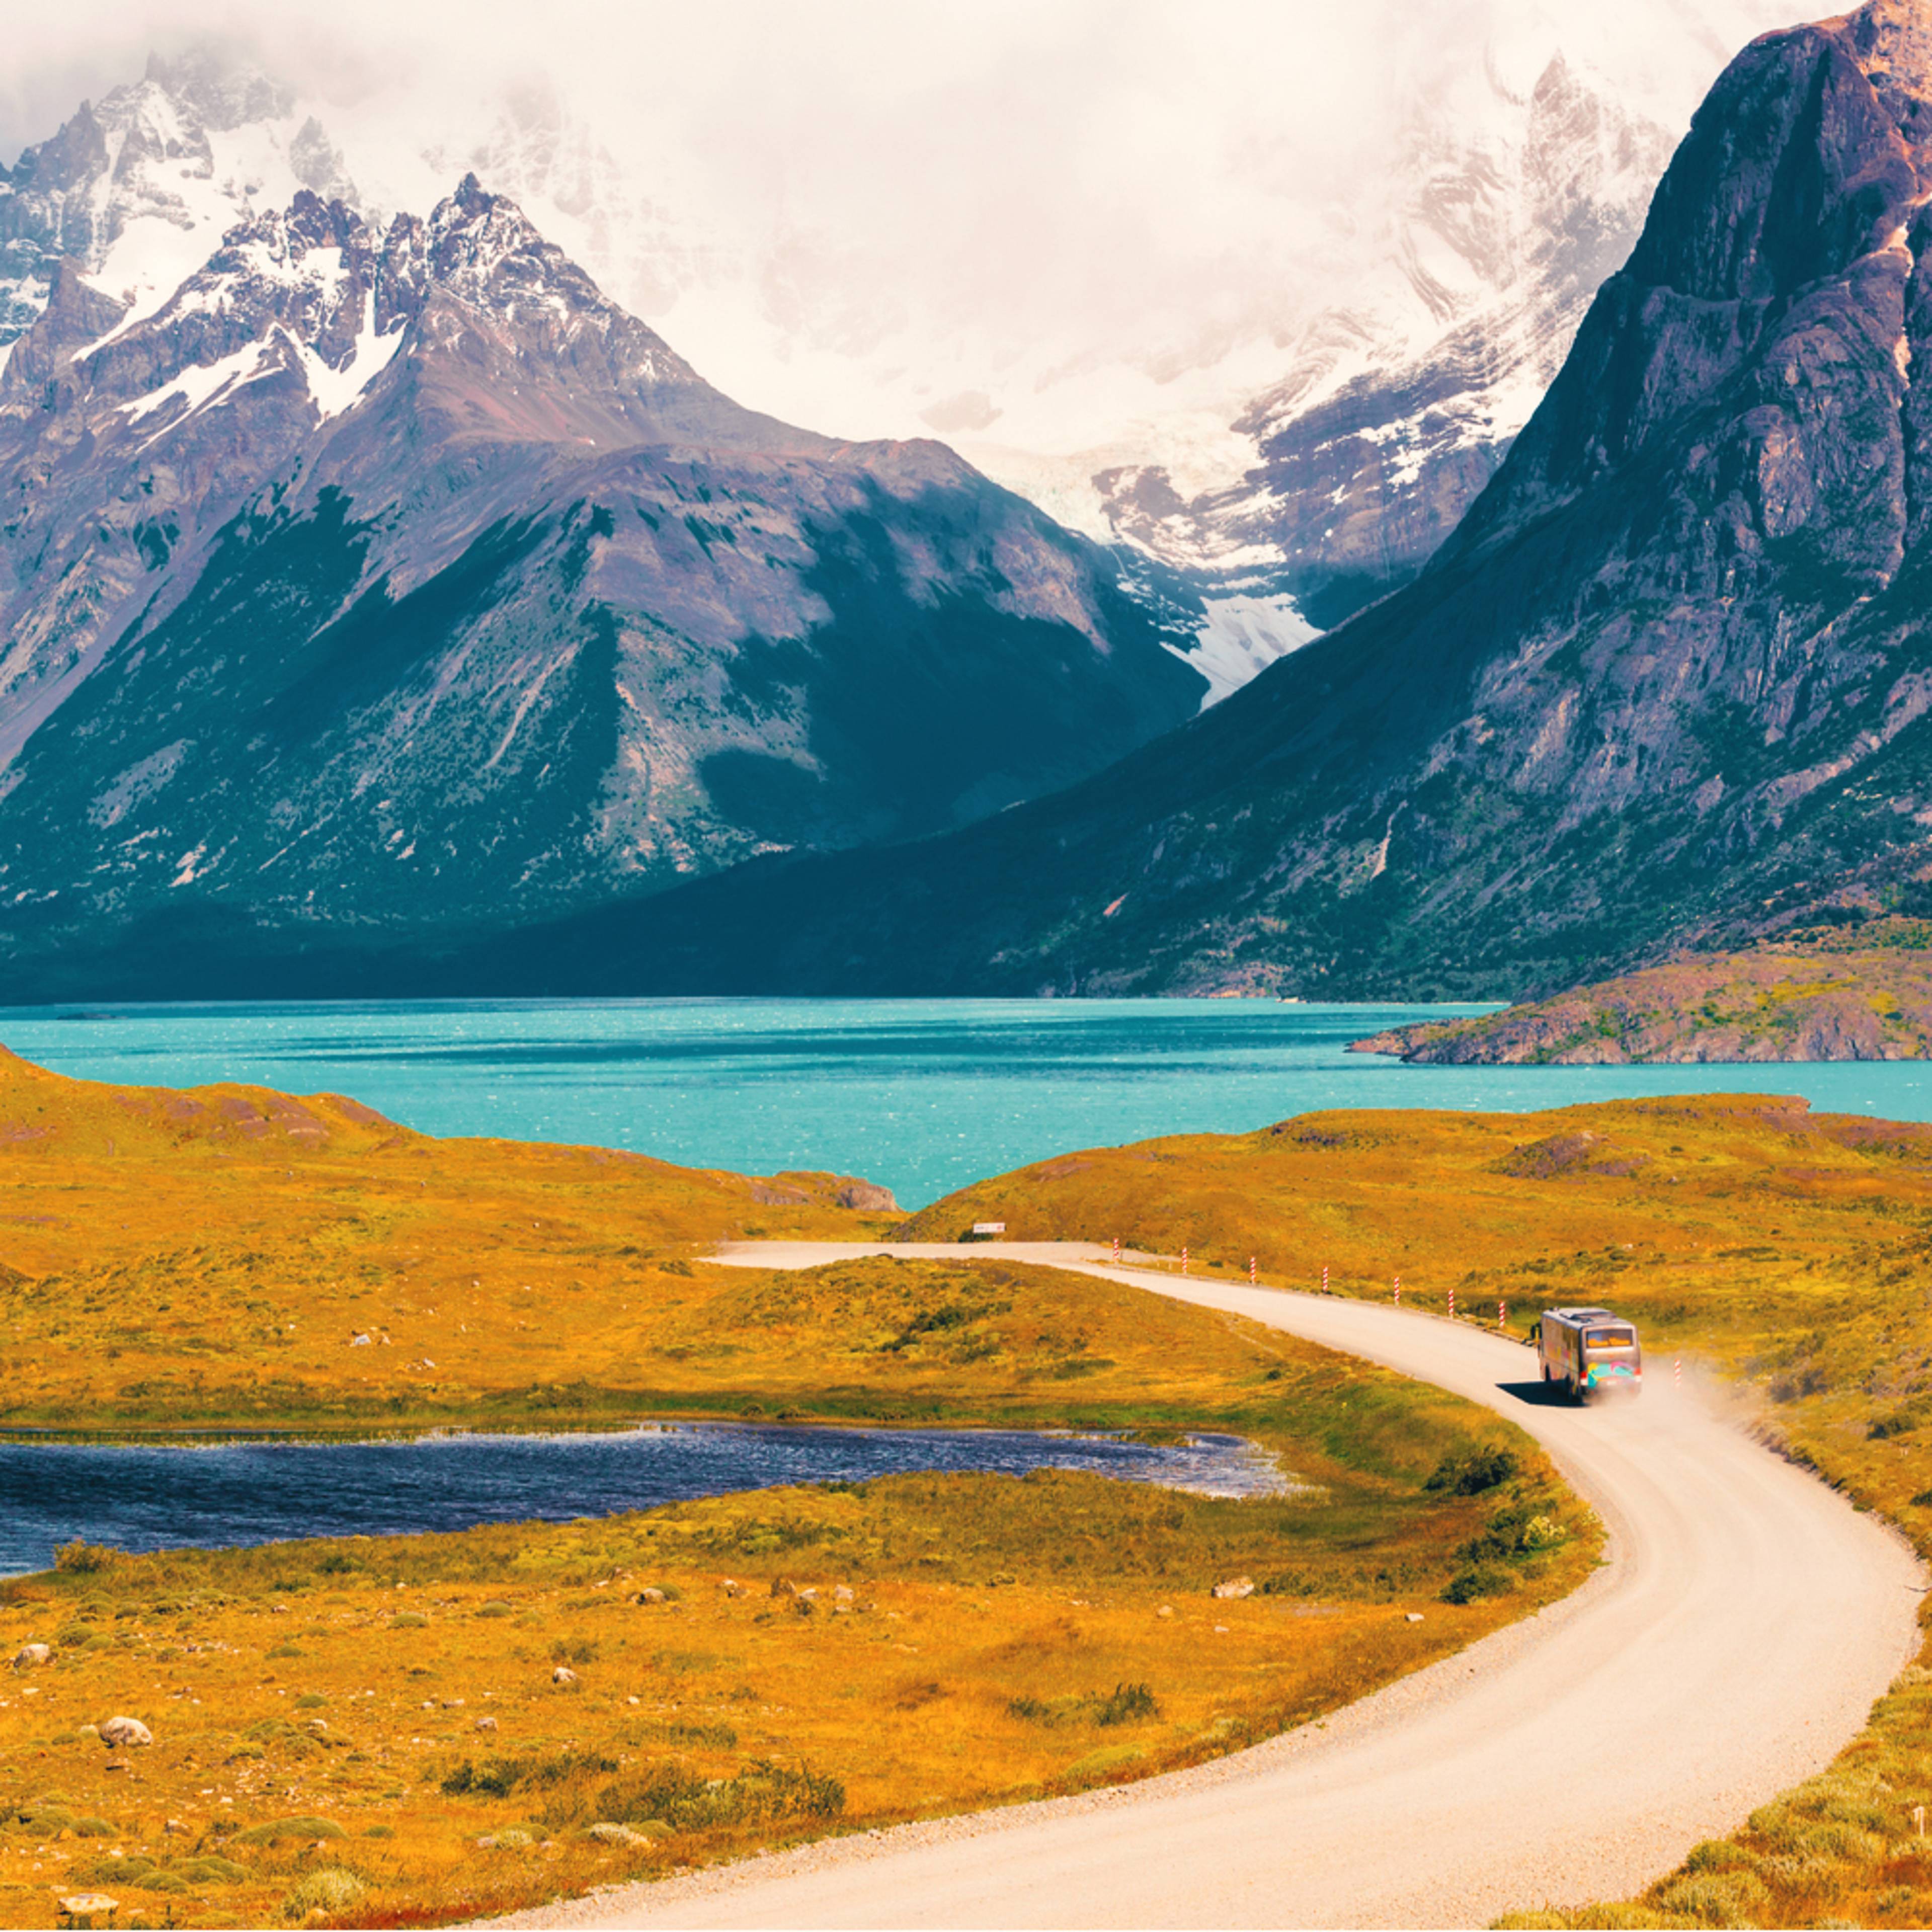 Individuelle Mietwagenrundreisen Patagonien - Reise jetzt individuell gestalten